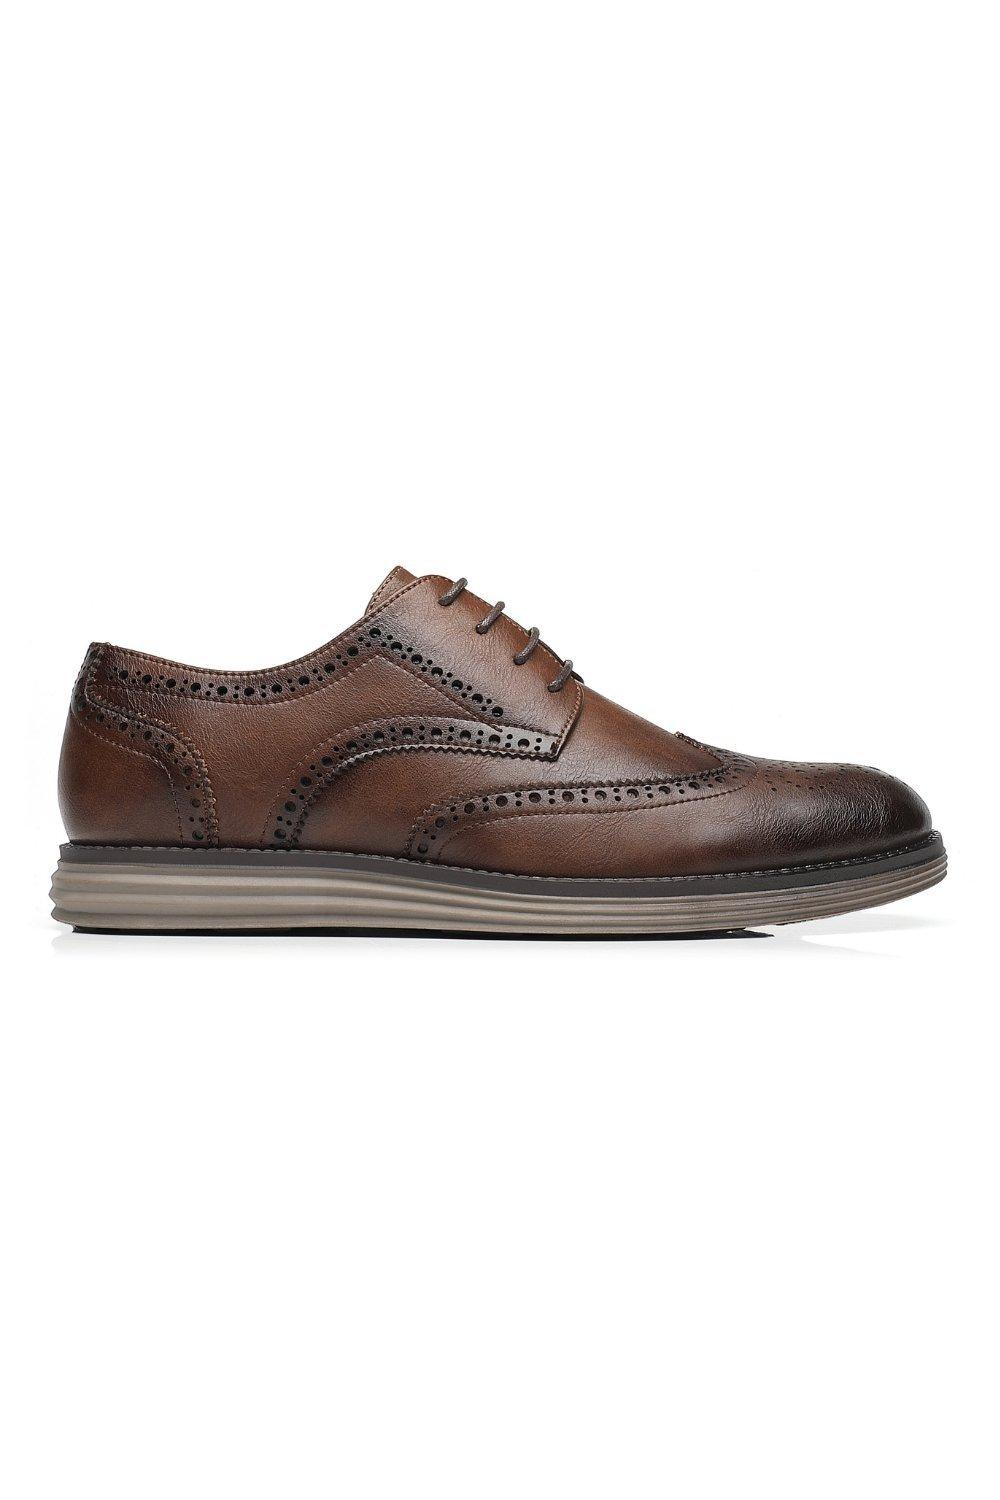 Кожаные деловые туфли на шнуровке в стиле смарт-офис TOP STAKA SHOES, коричневый мужские кожаные деловые туфли на шнуровке для офиса черный